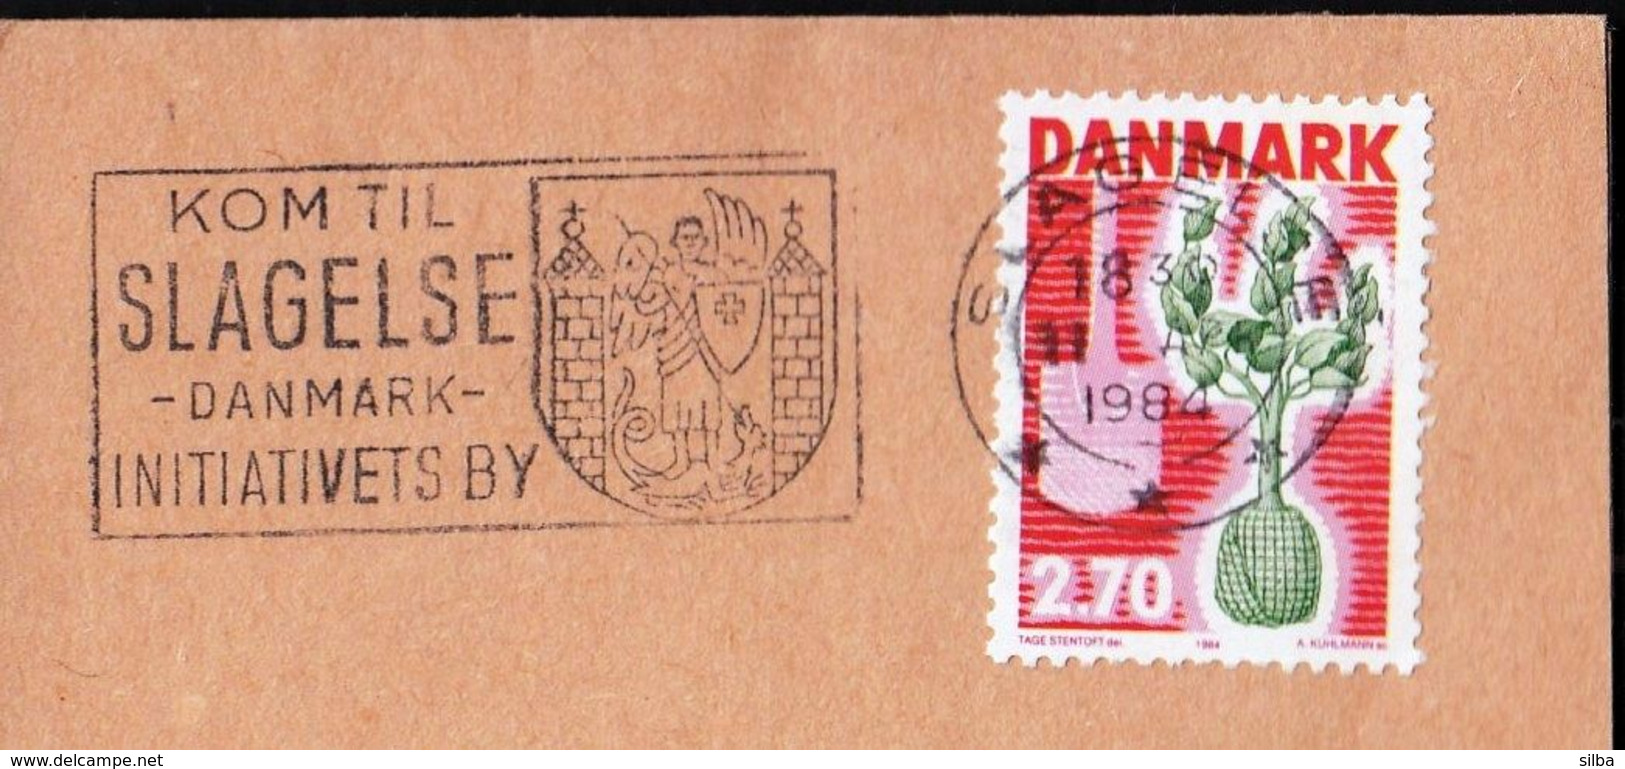 Denmark Slagelse 1984 / Kom Til Slagelse, Danmark, Initiativets By / Coat Of Arms / Machine Stamp - Machines à Affranchir (EMA)